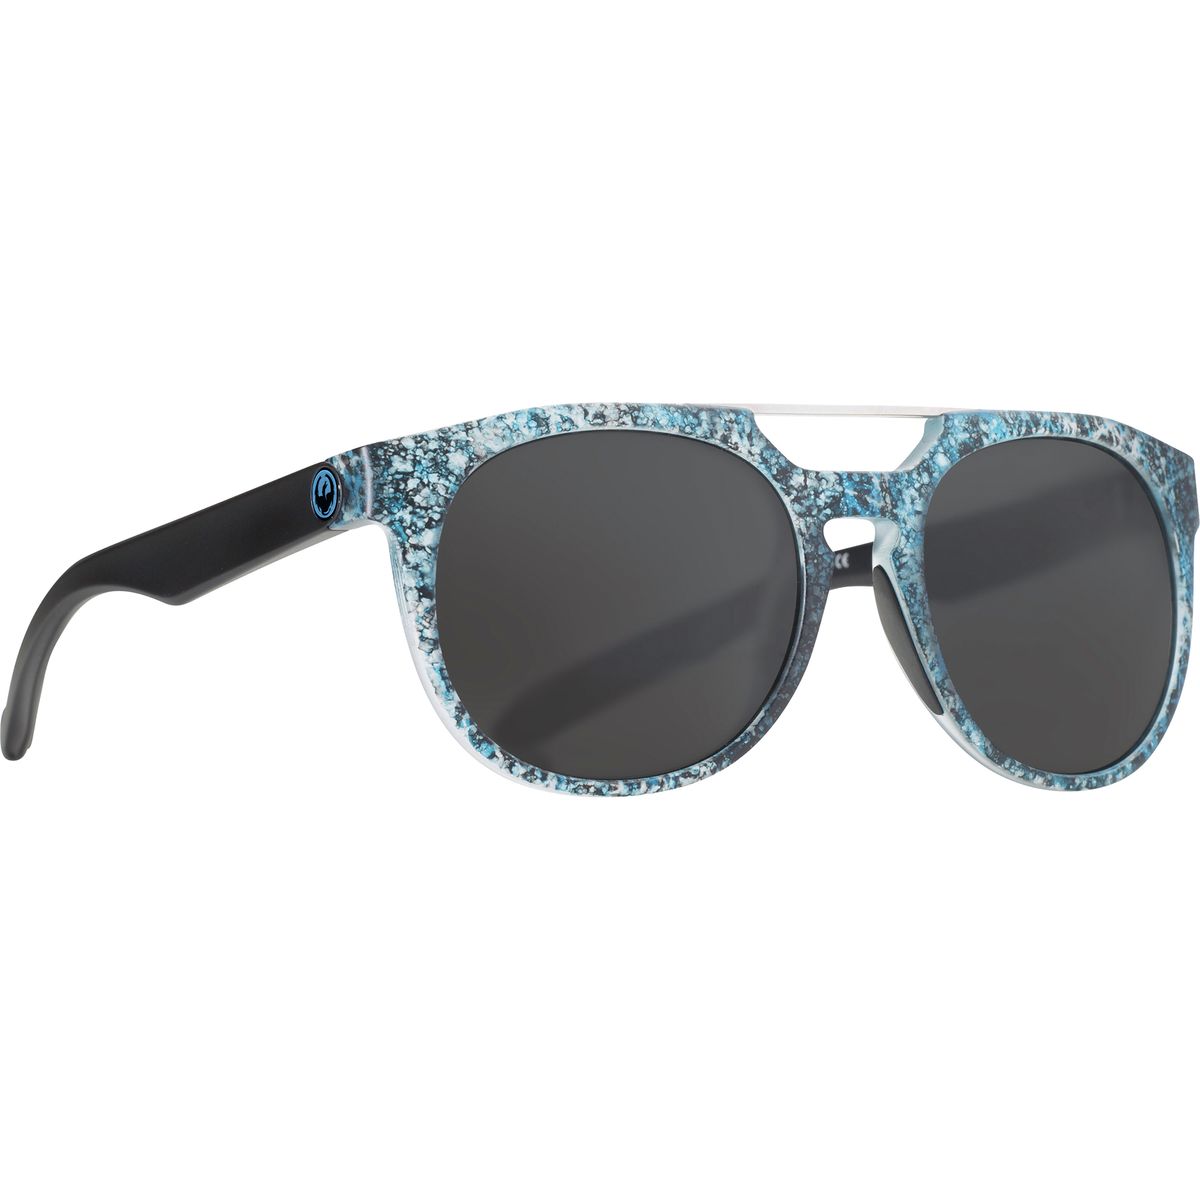 Dragon Proflect Sunglasses | Backcountry.com